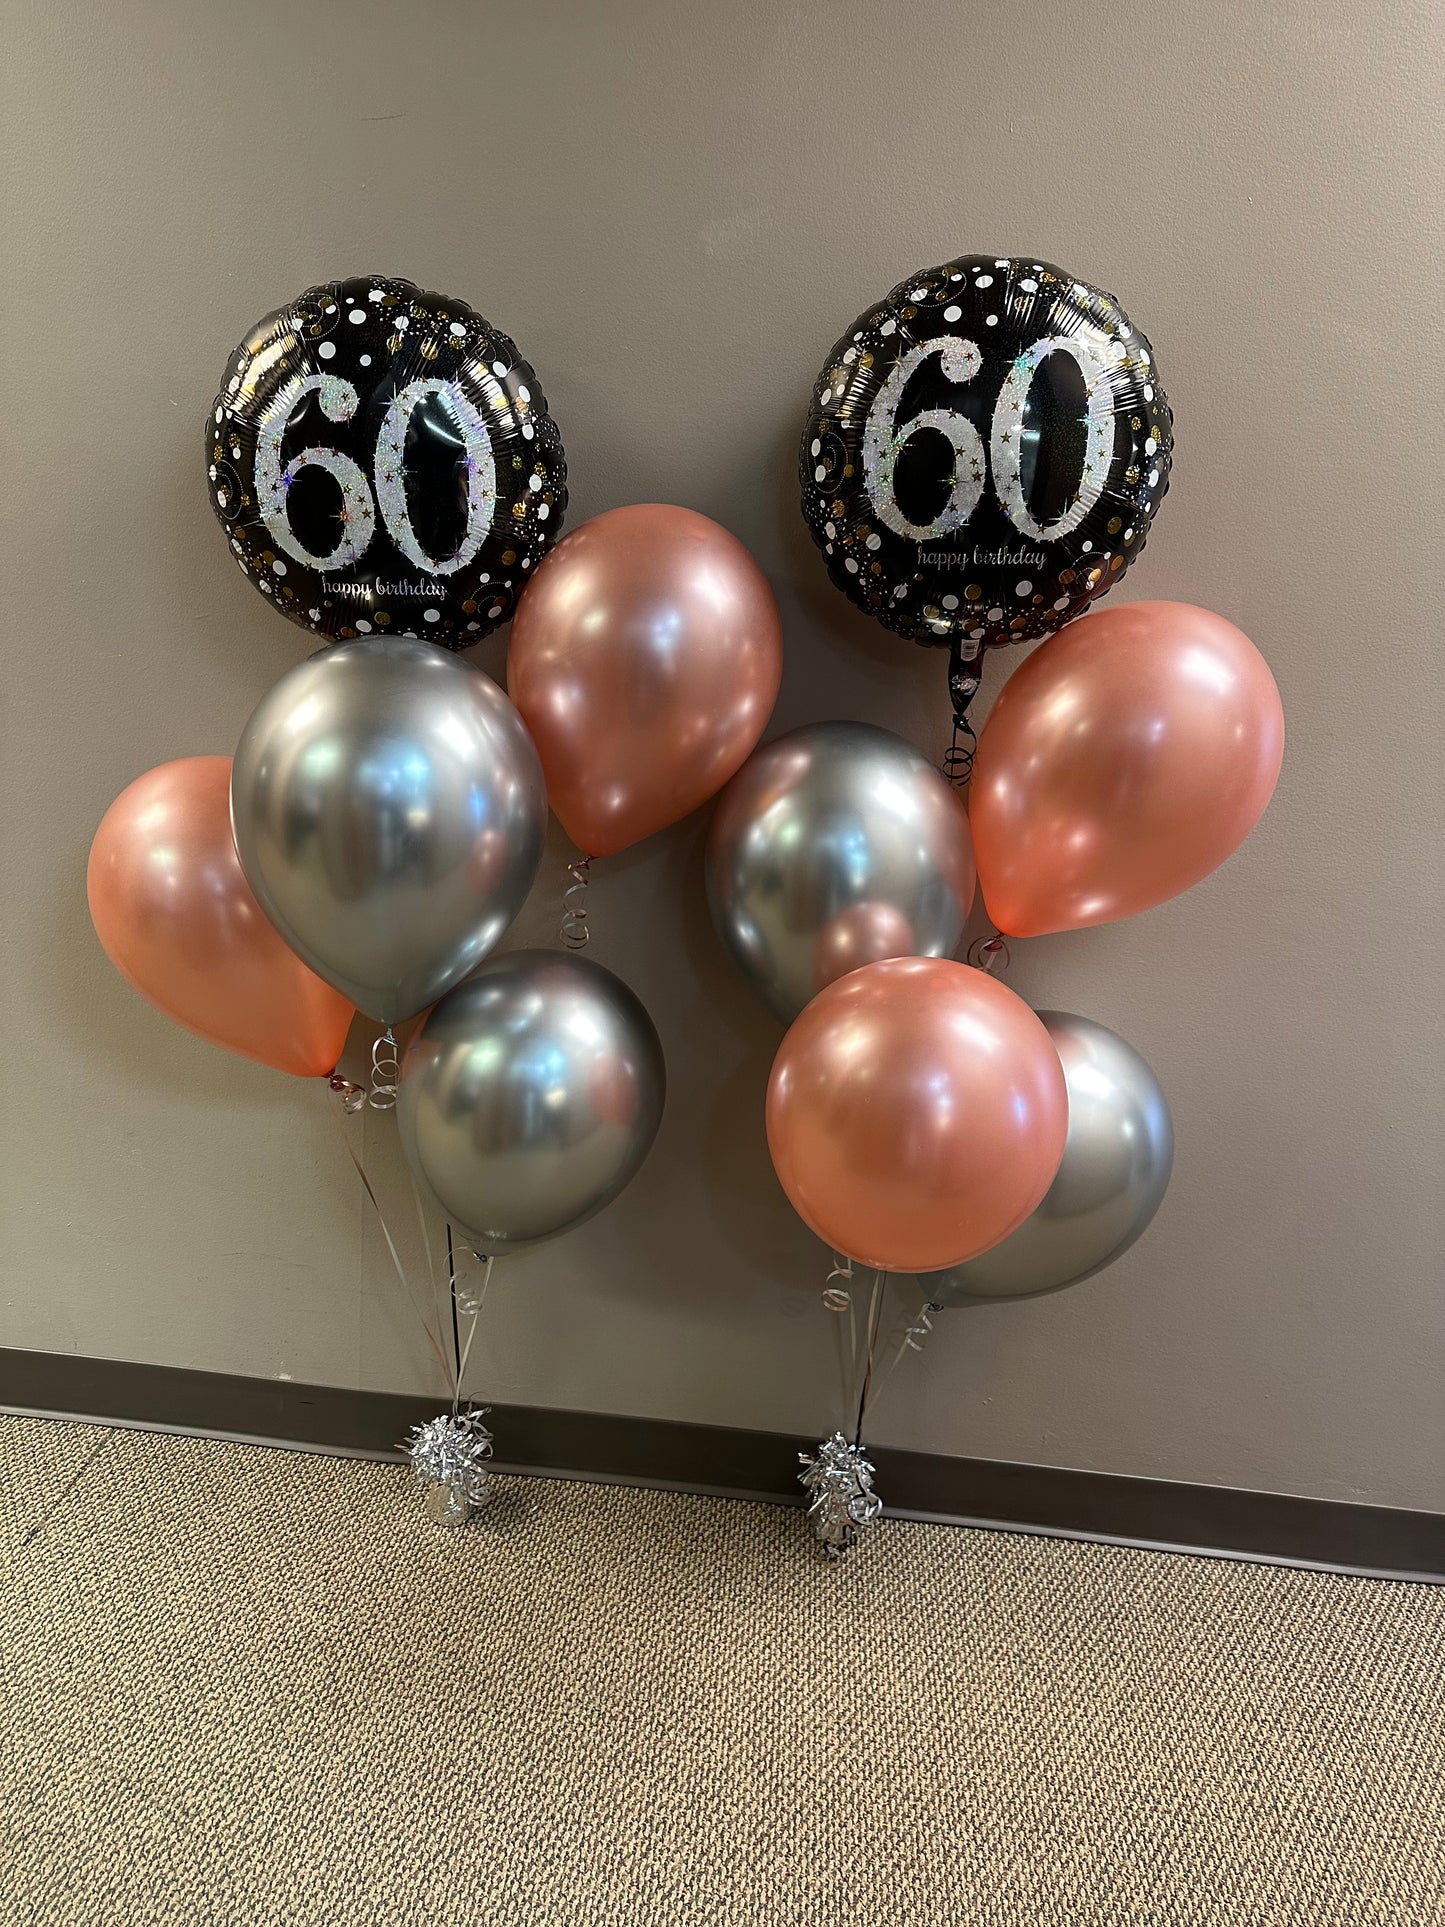 Happy Birthday - Sparkling 60